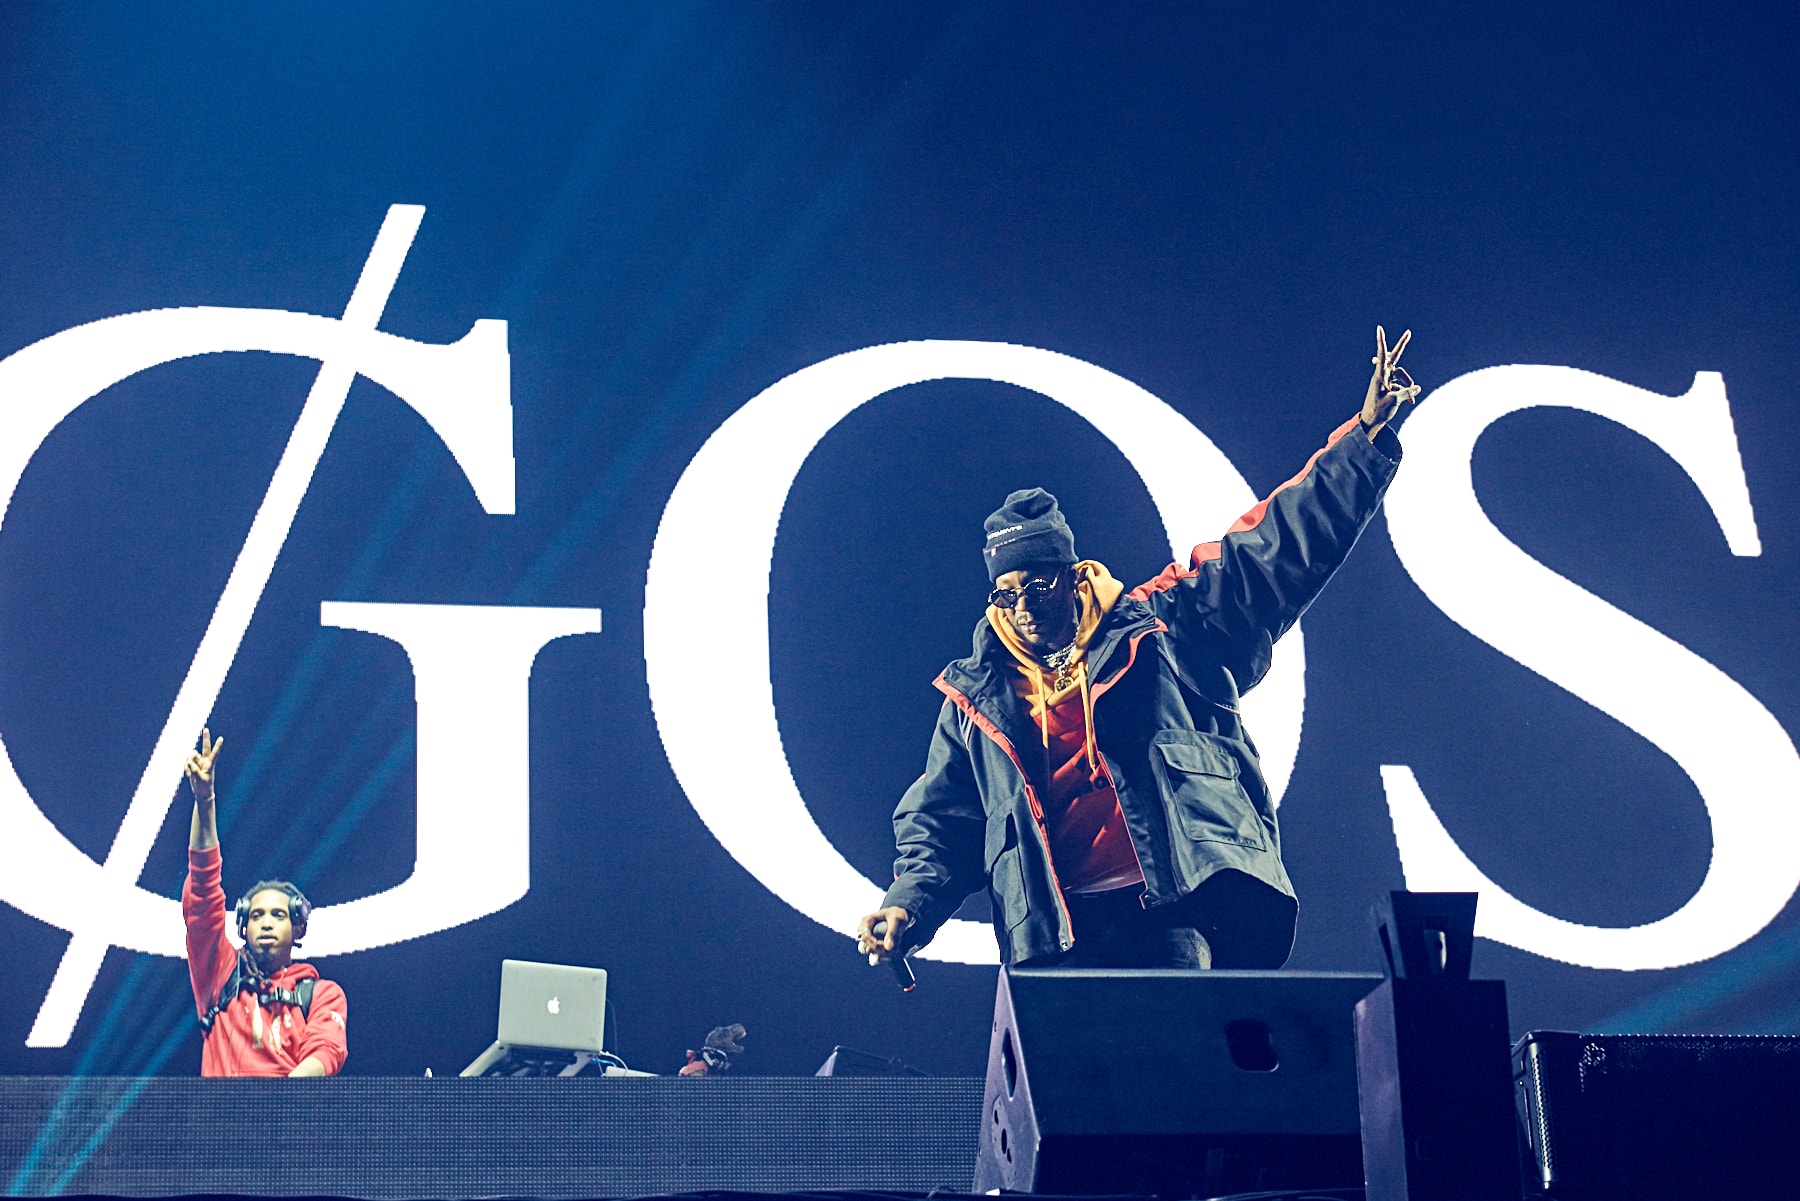 미고스 르그랜드 힙합 페스티벌 백스테이지 & 현장 후기 2018 migos le grand hip hop festival backstage recap